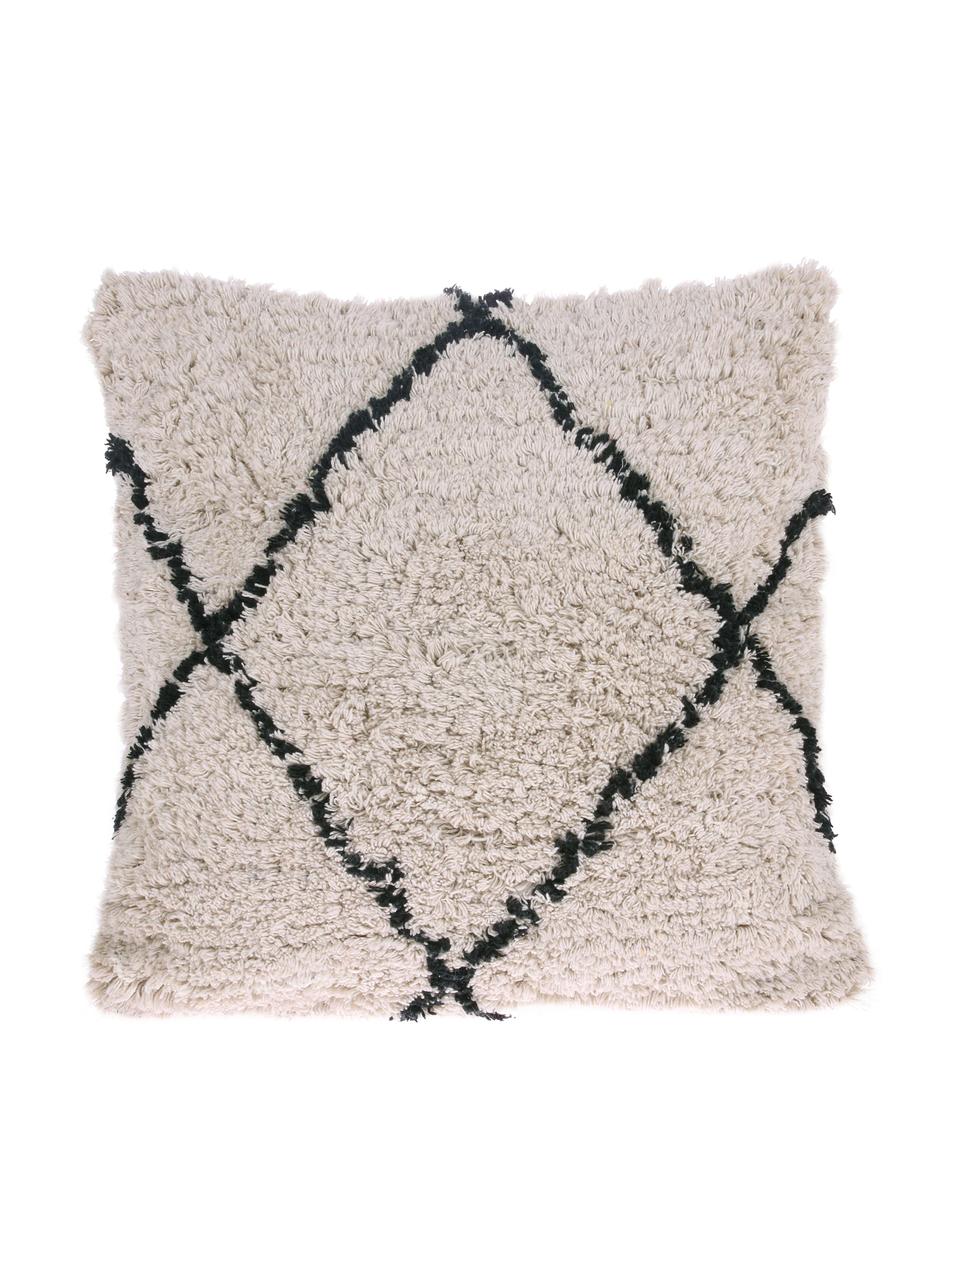 Kissen Diamond mit getufteter Oberfläche, mit Inlett, 100% Baumwolle, Gebrochenes Weiß, Schwarz, 50 x 50 cm